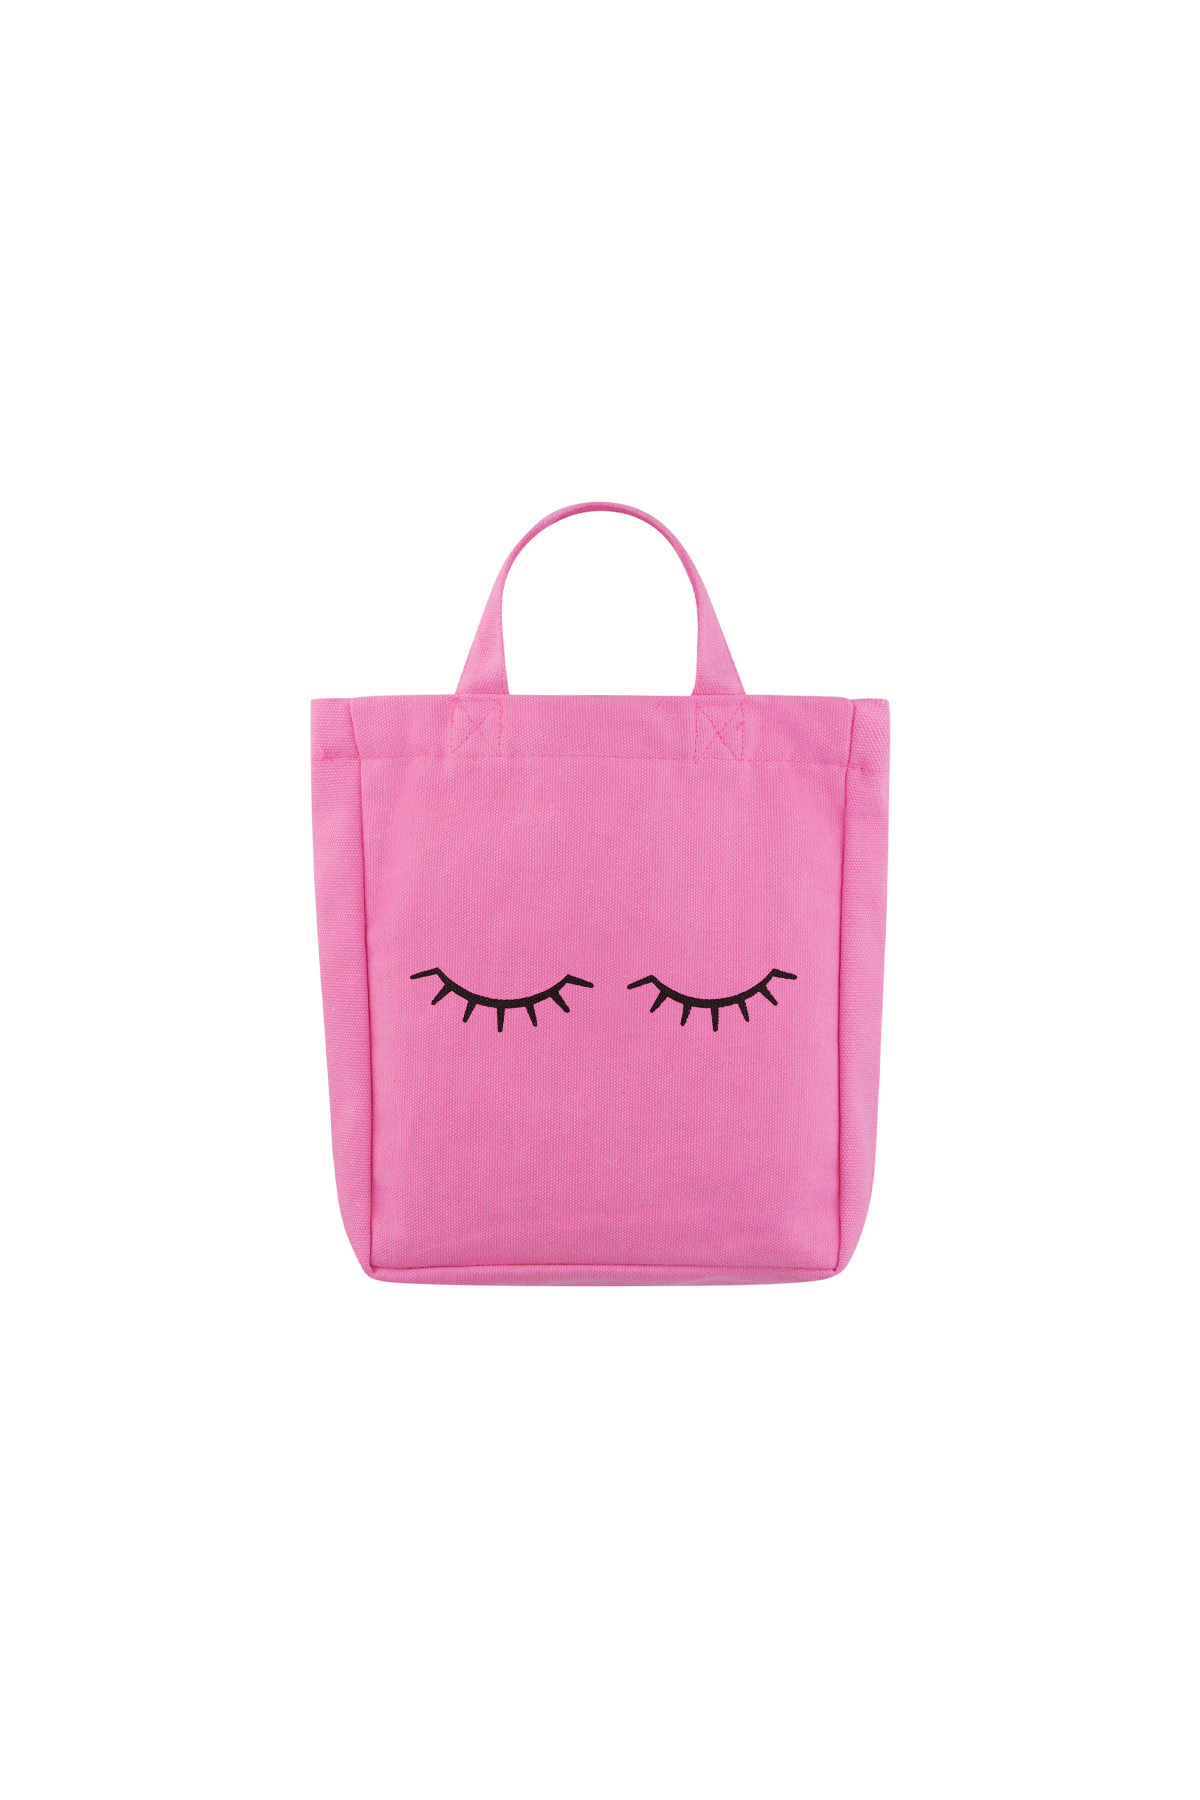 Small canvas bag eyelashes - pink 